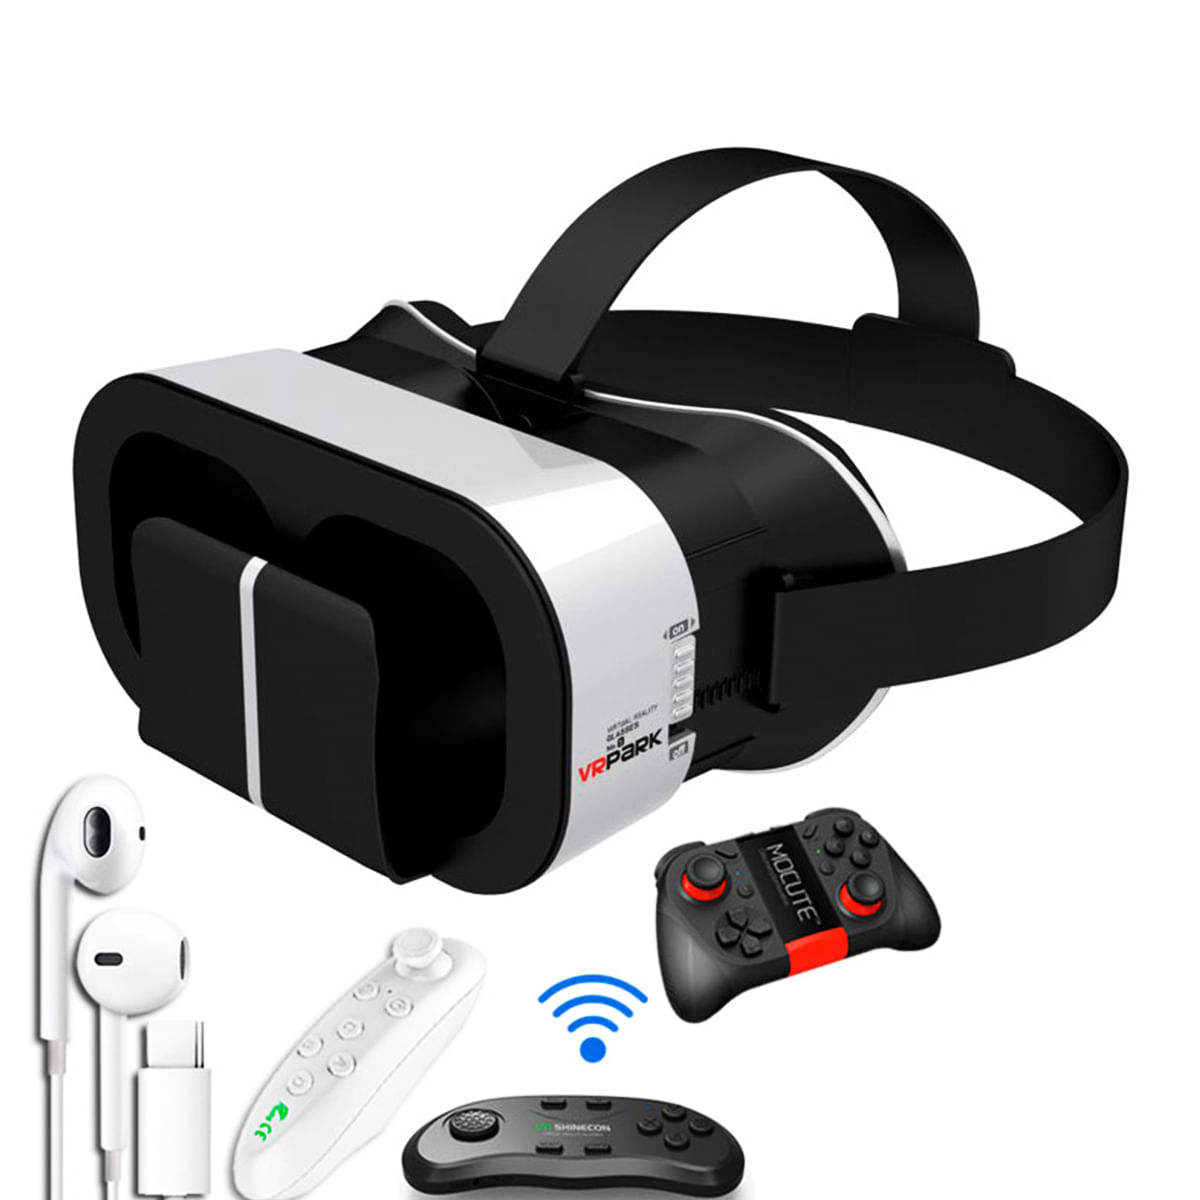 VR Park 5.0 Óculos de Realidade Virtual Sexy Import